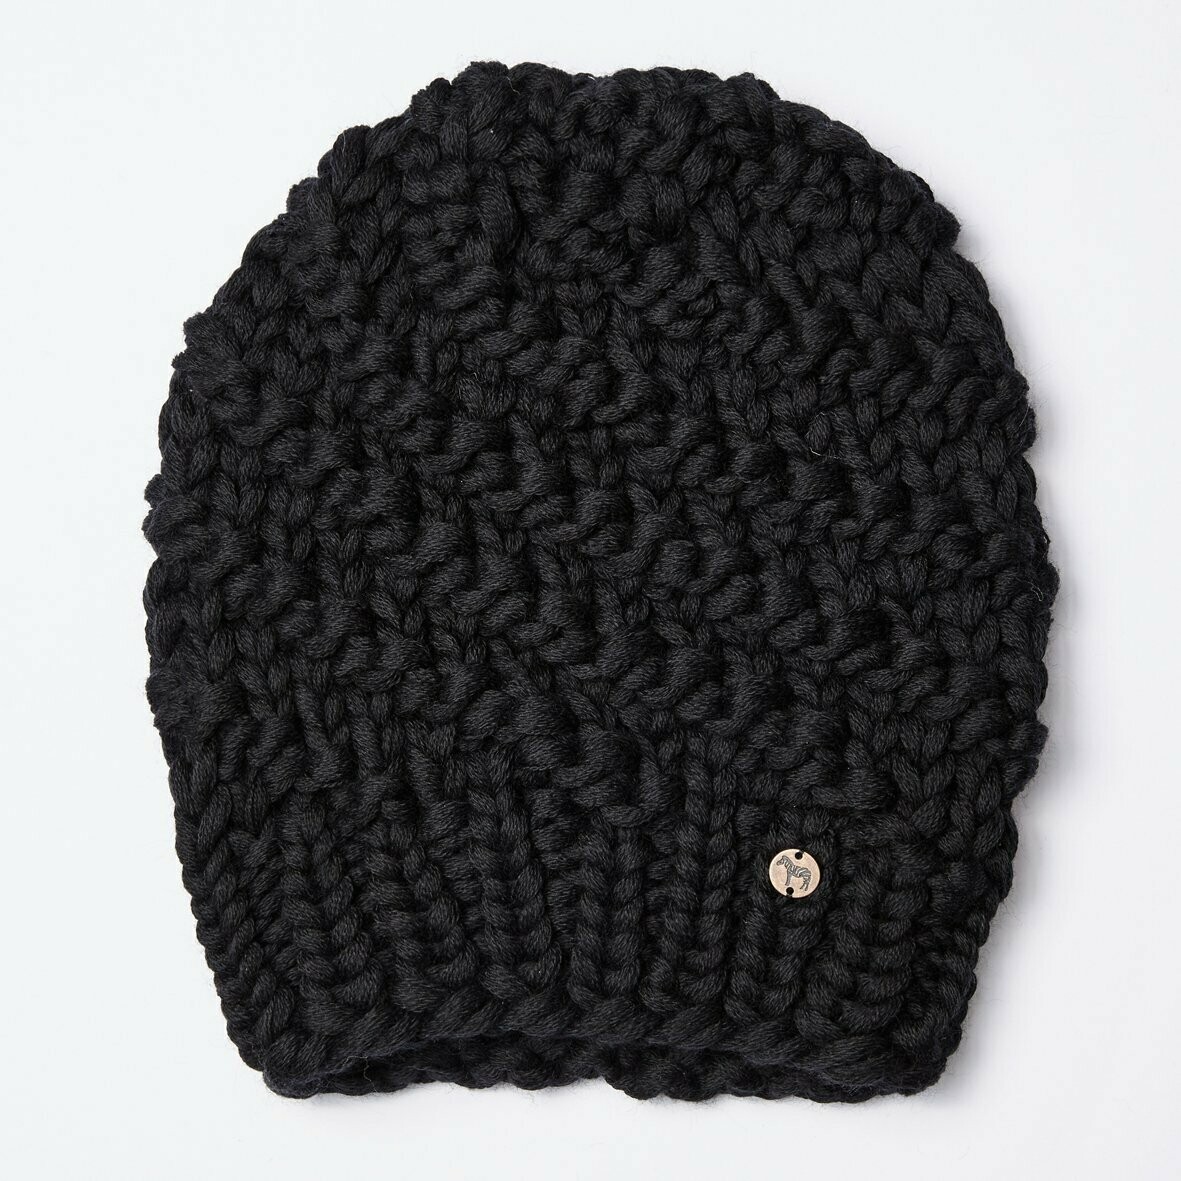 Handstrick-Mütze LUISA, Farbe: schwarz, Größe: M/L